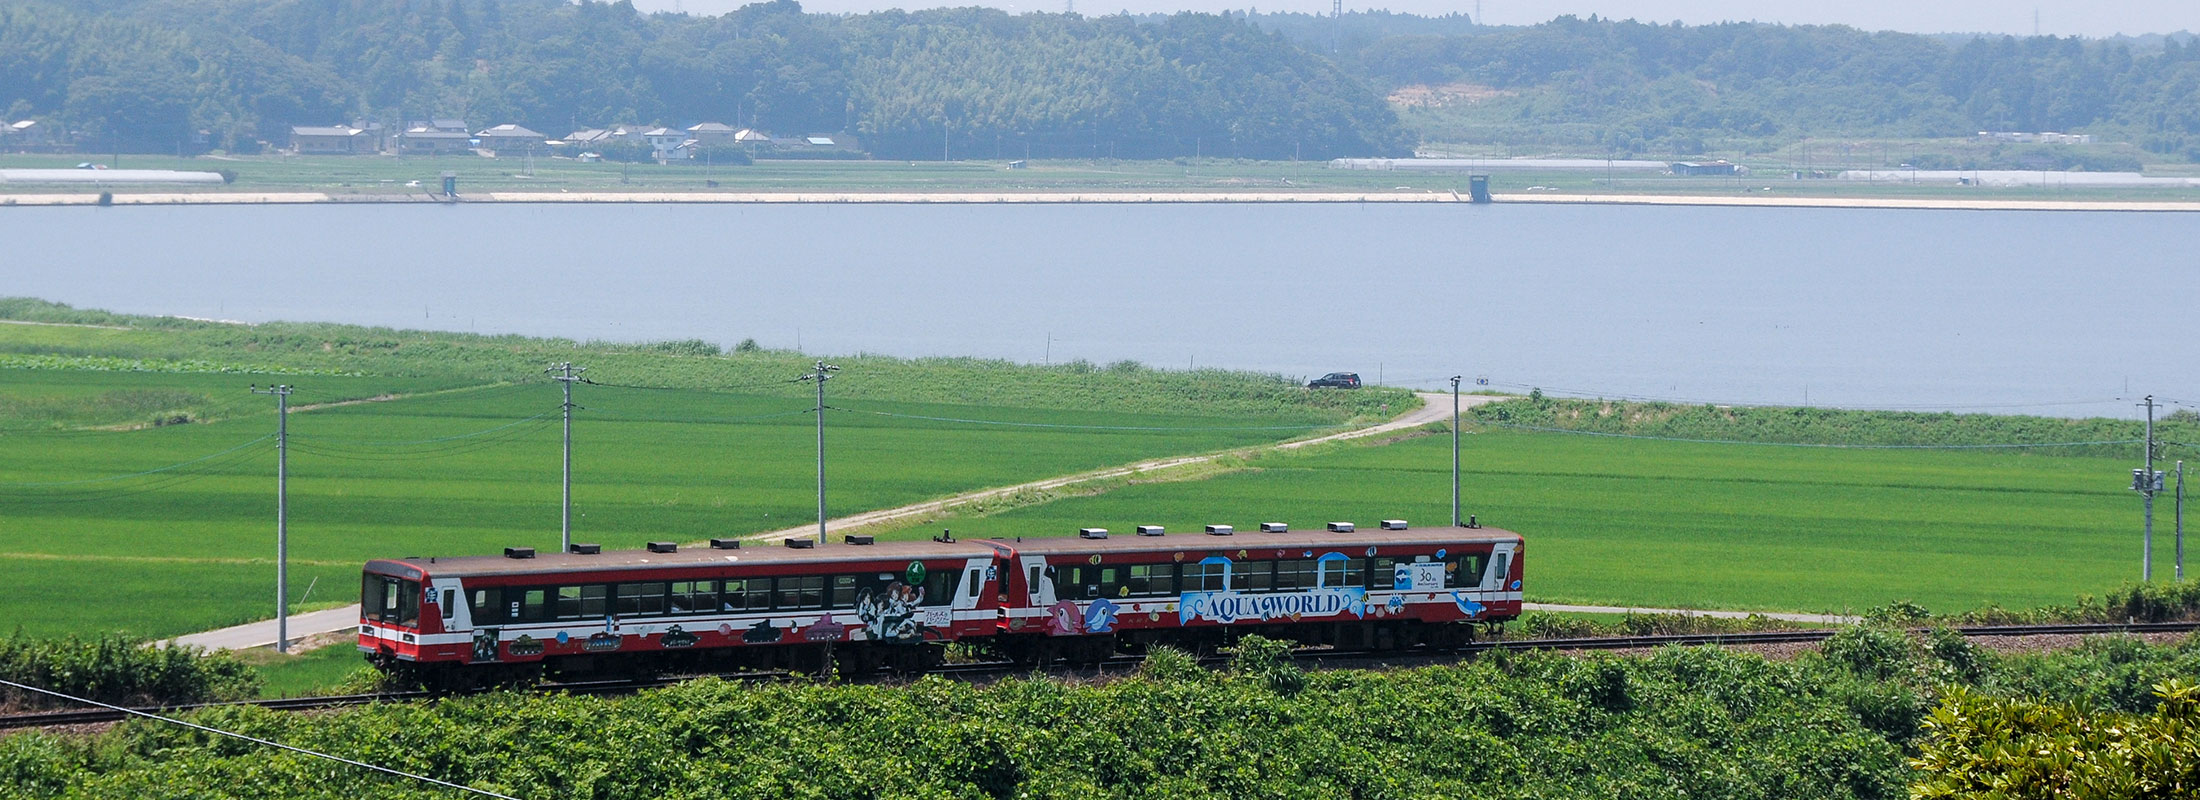 田園と臨海鉄道